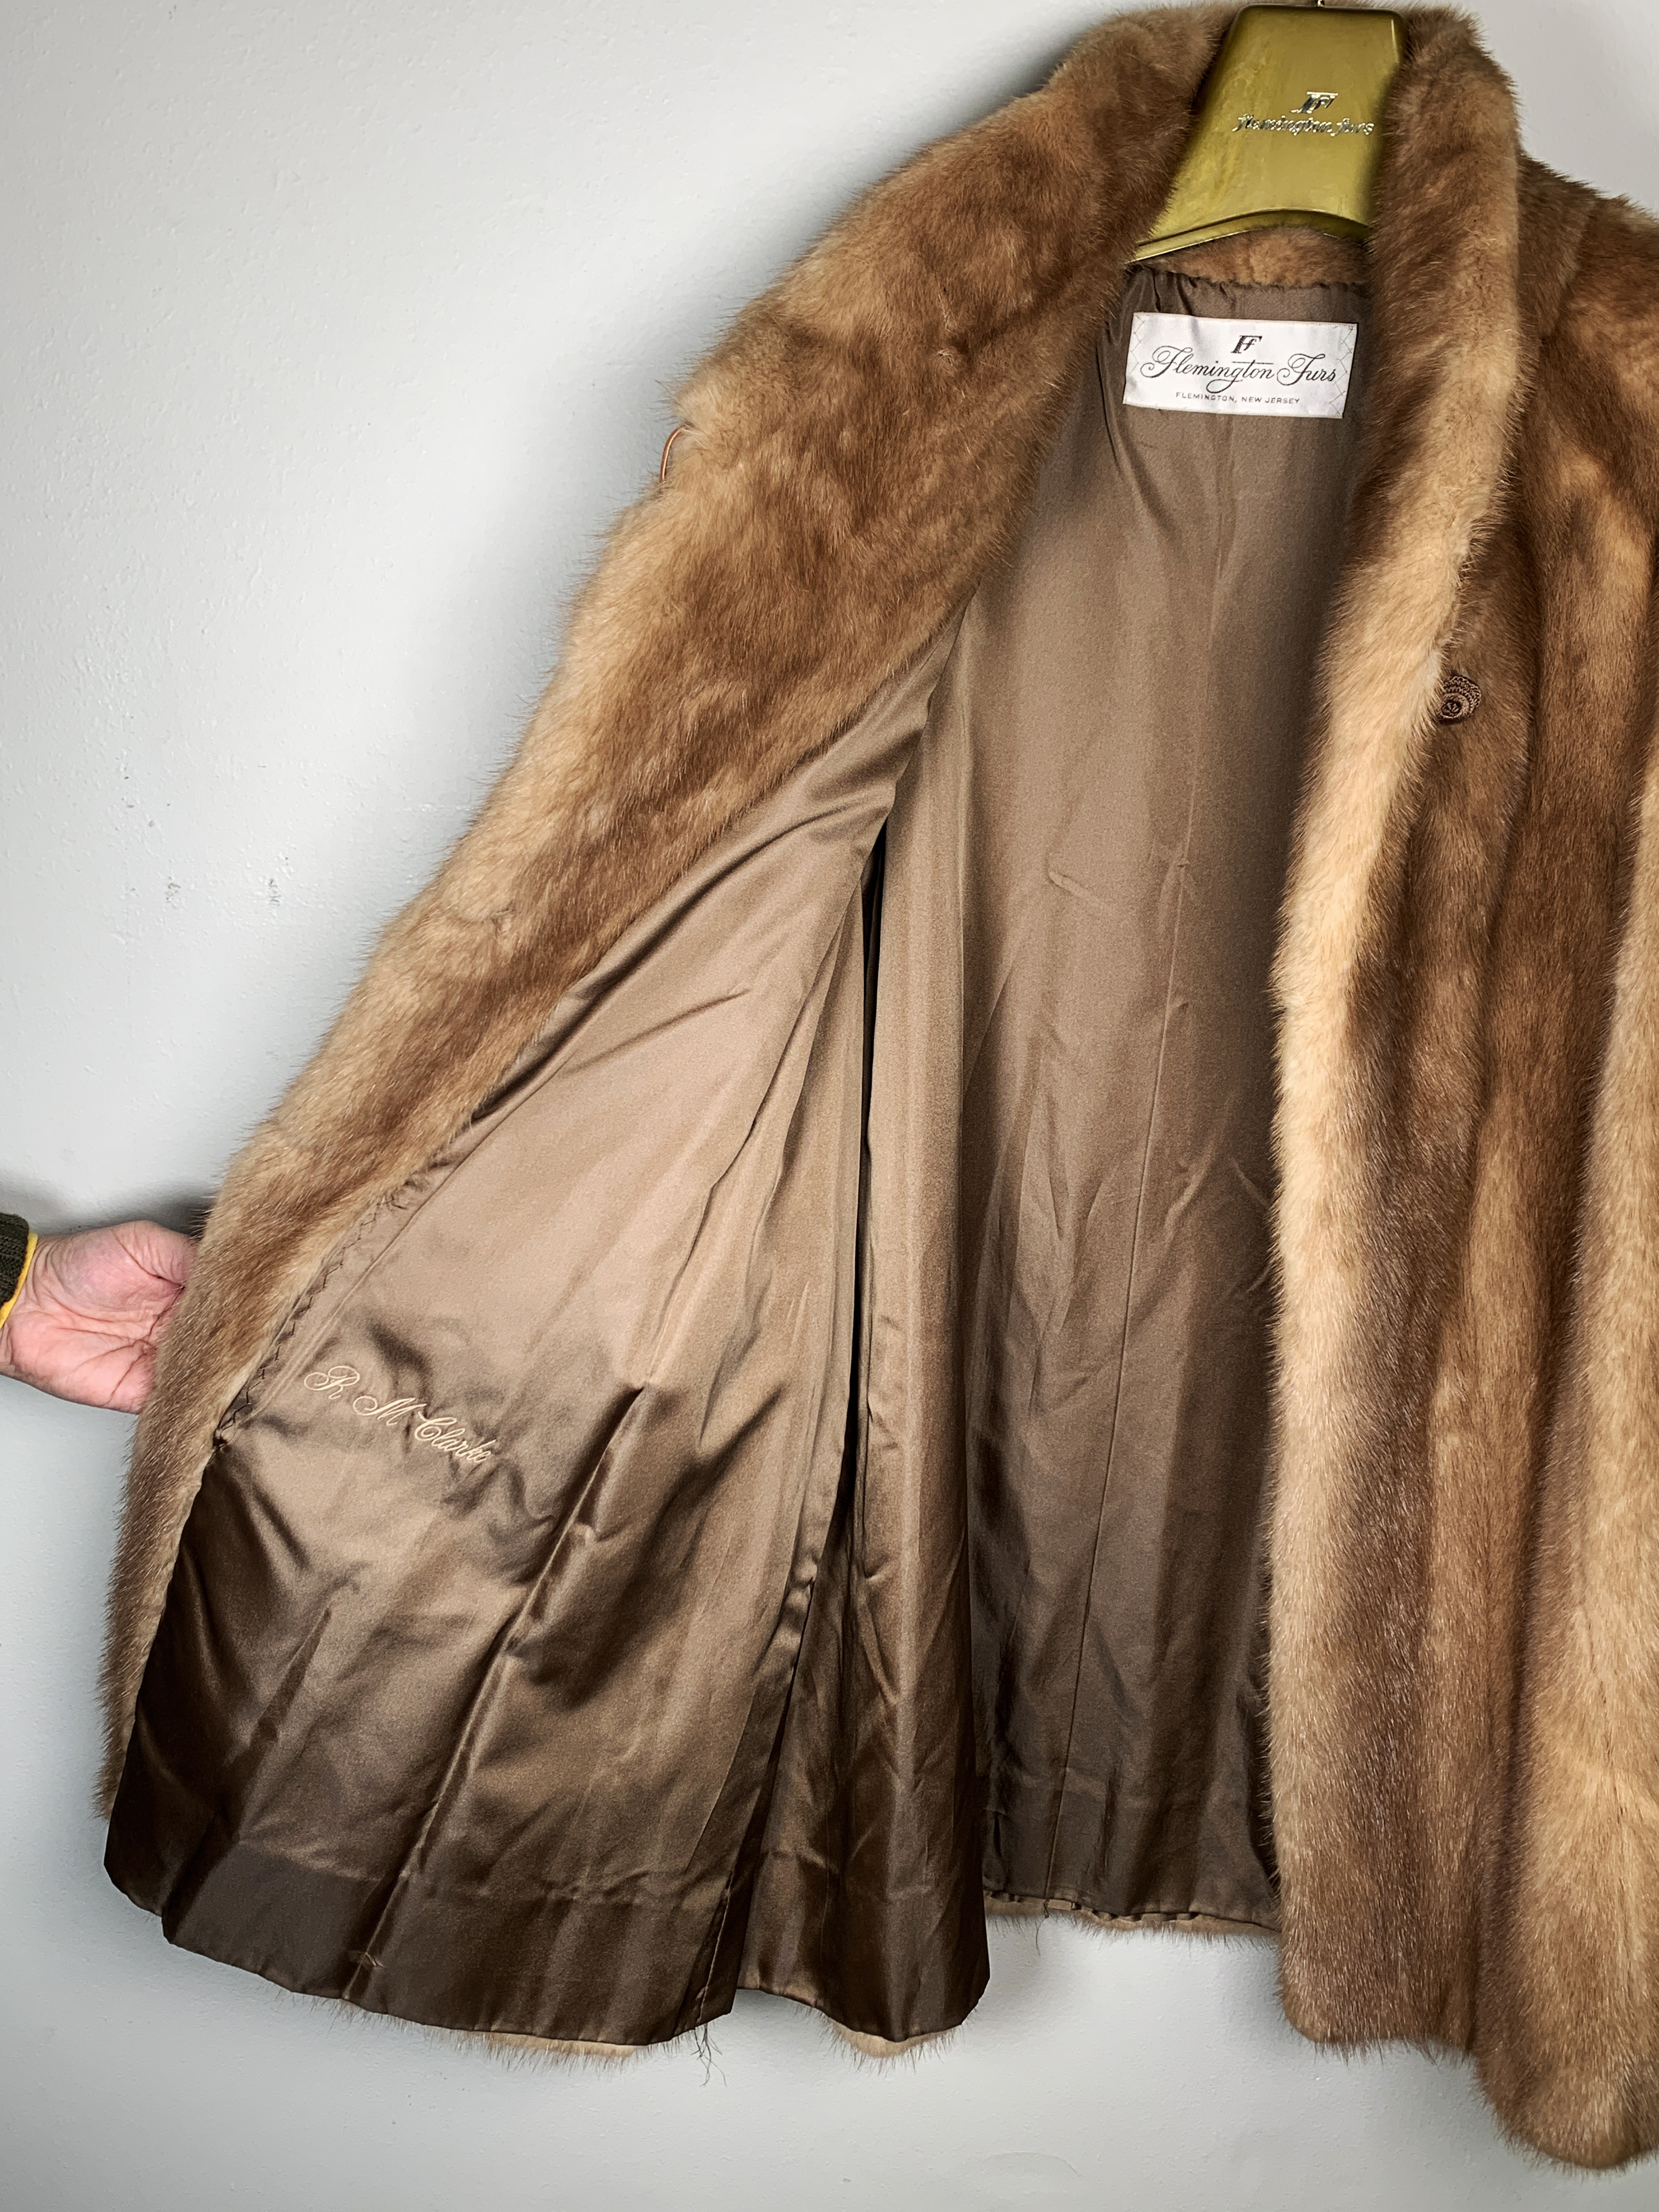 Vintage Flemington Furs Mink Coat W Original Hanger And Storage Bag image 3